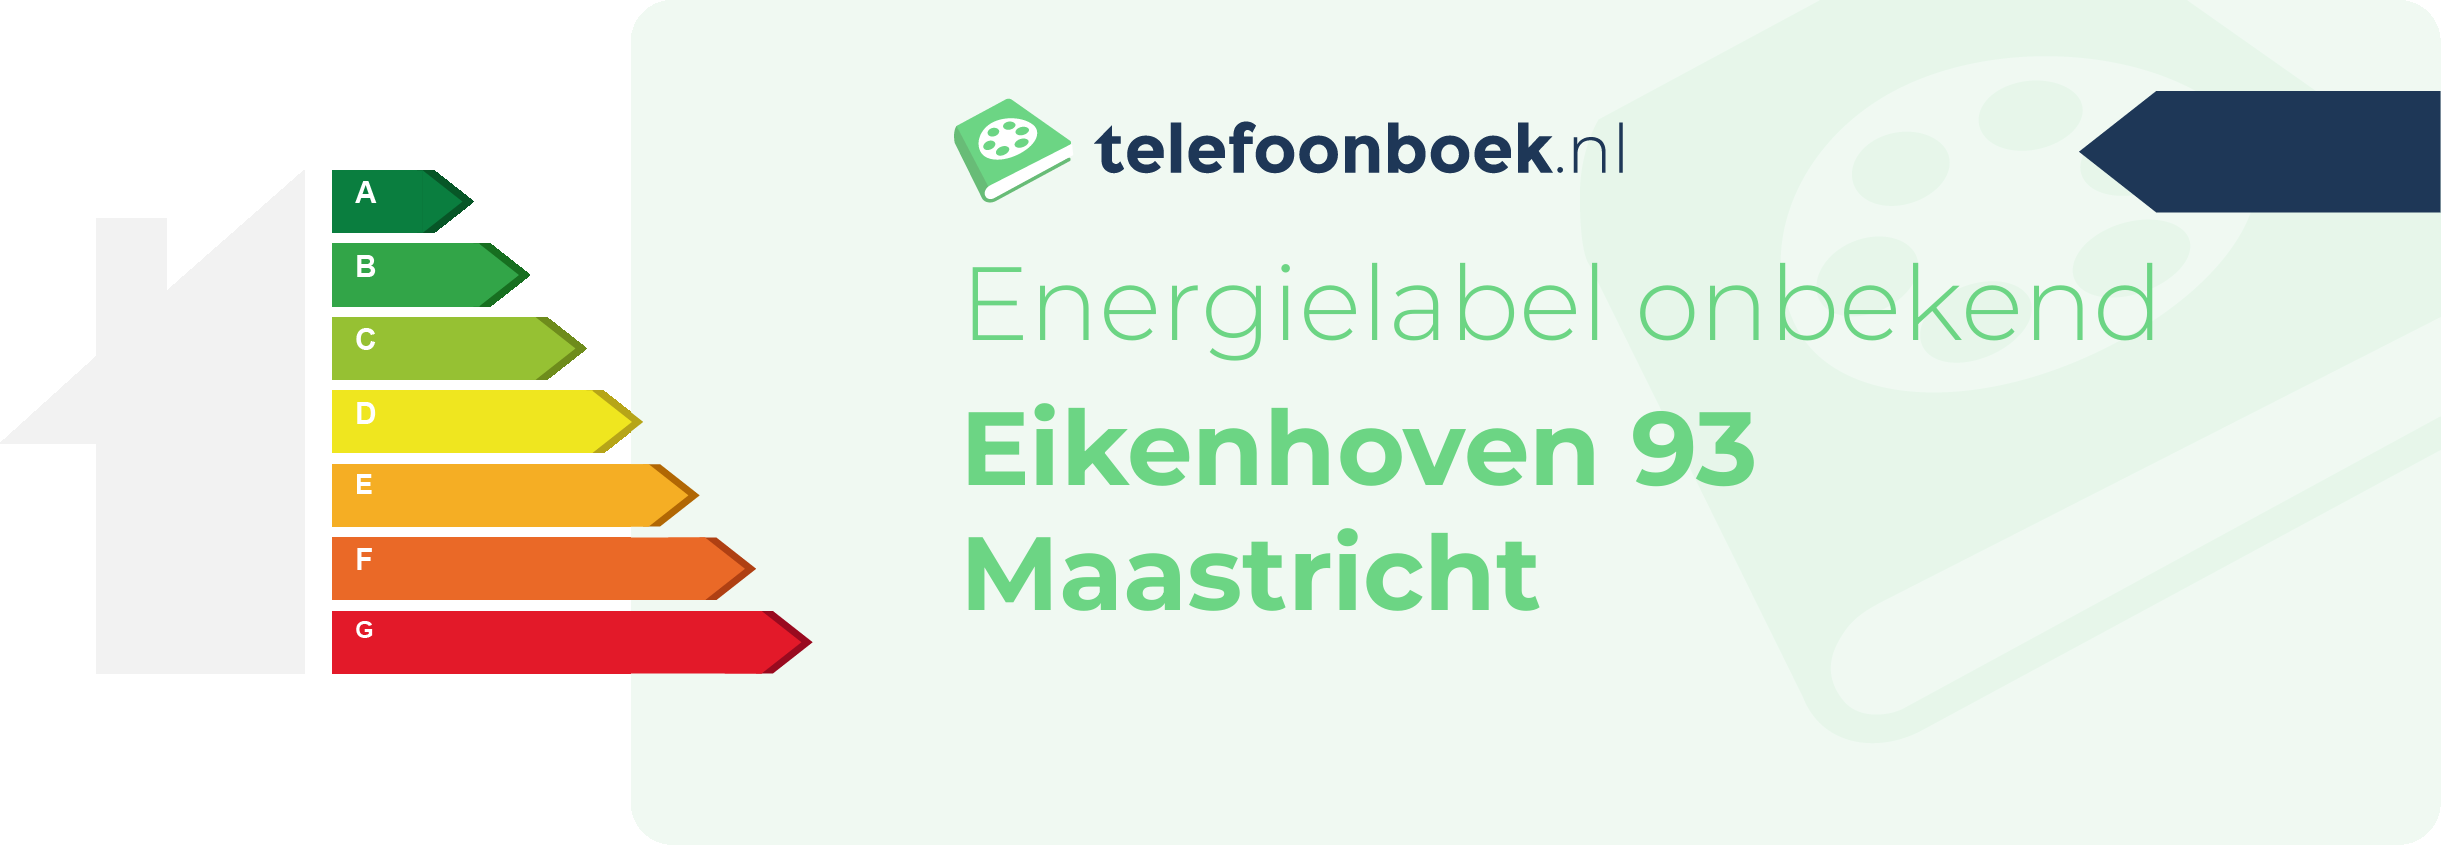 Energielabel Eikenhoven 93 Maastricht